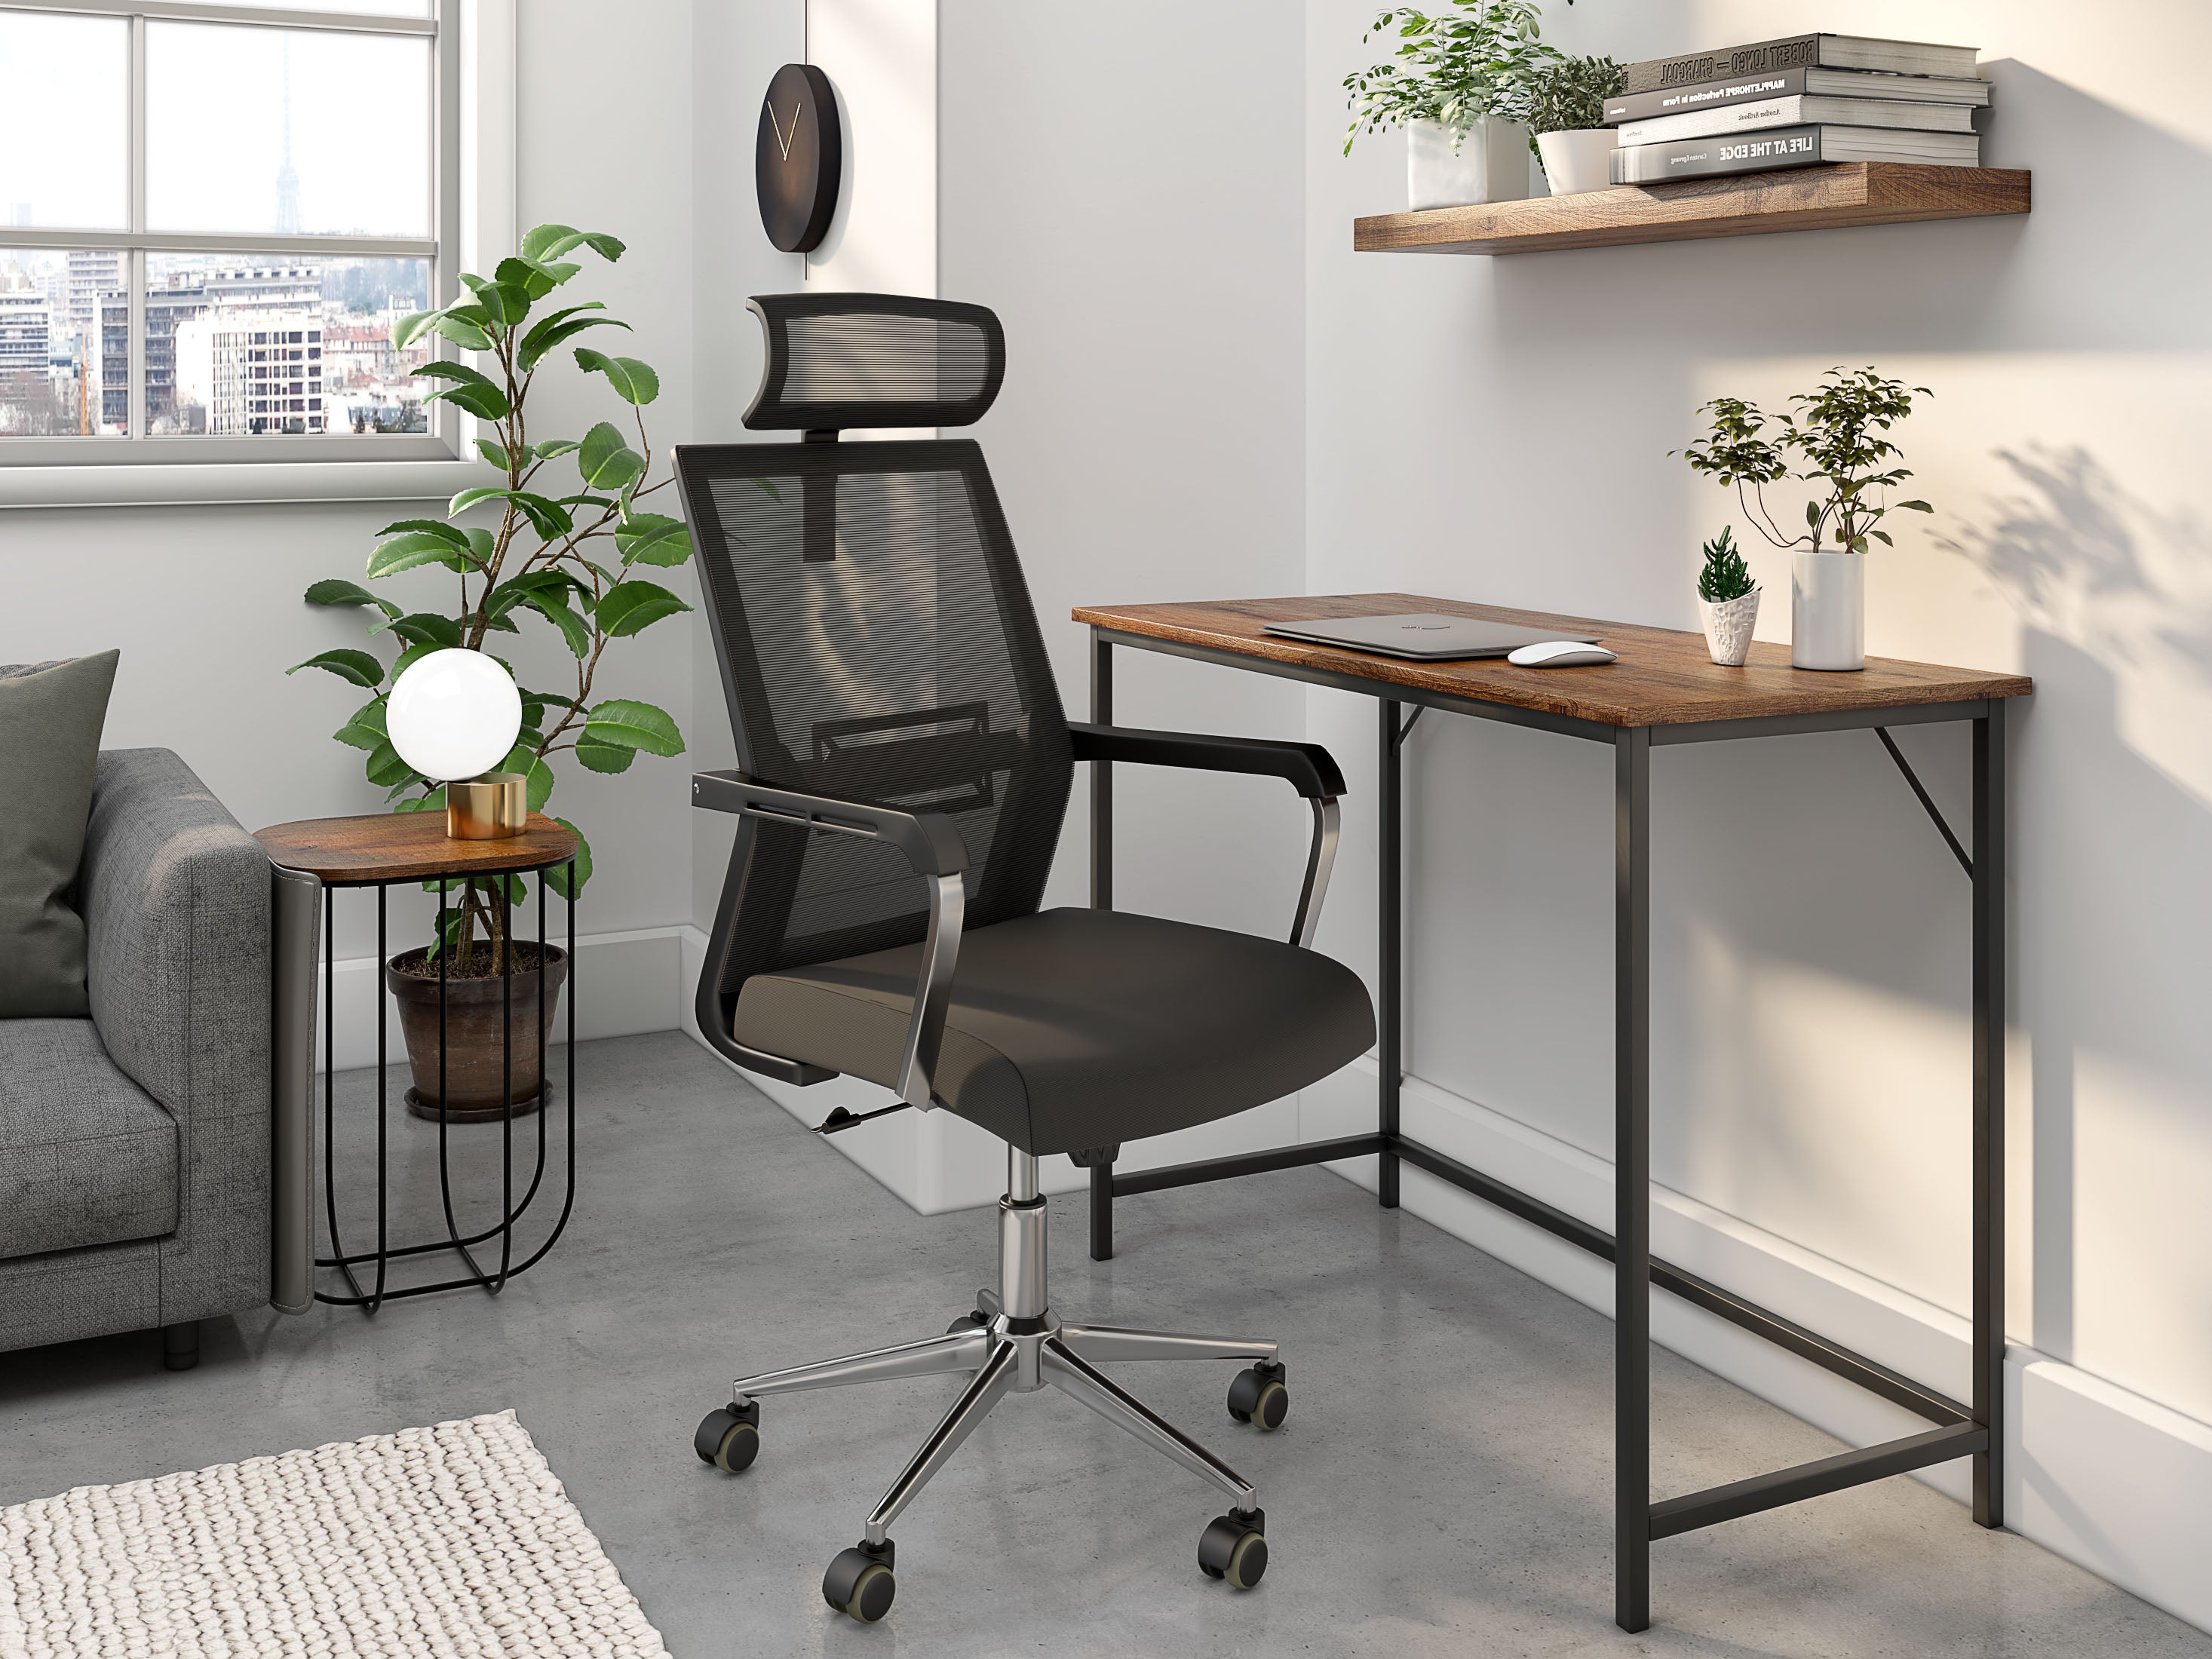 Nancy's Jacksonville Office Chair - Swivel chair - Tiltable Backrest - Mesh - Ergonomic - Headrest - Black - Plastic - 55 x 56 x 115-131 cm